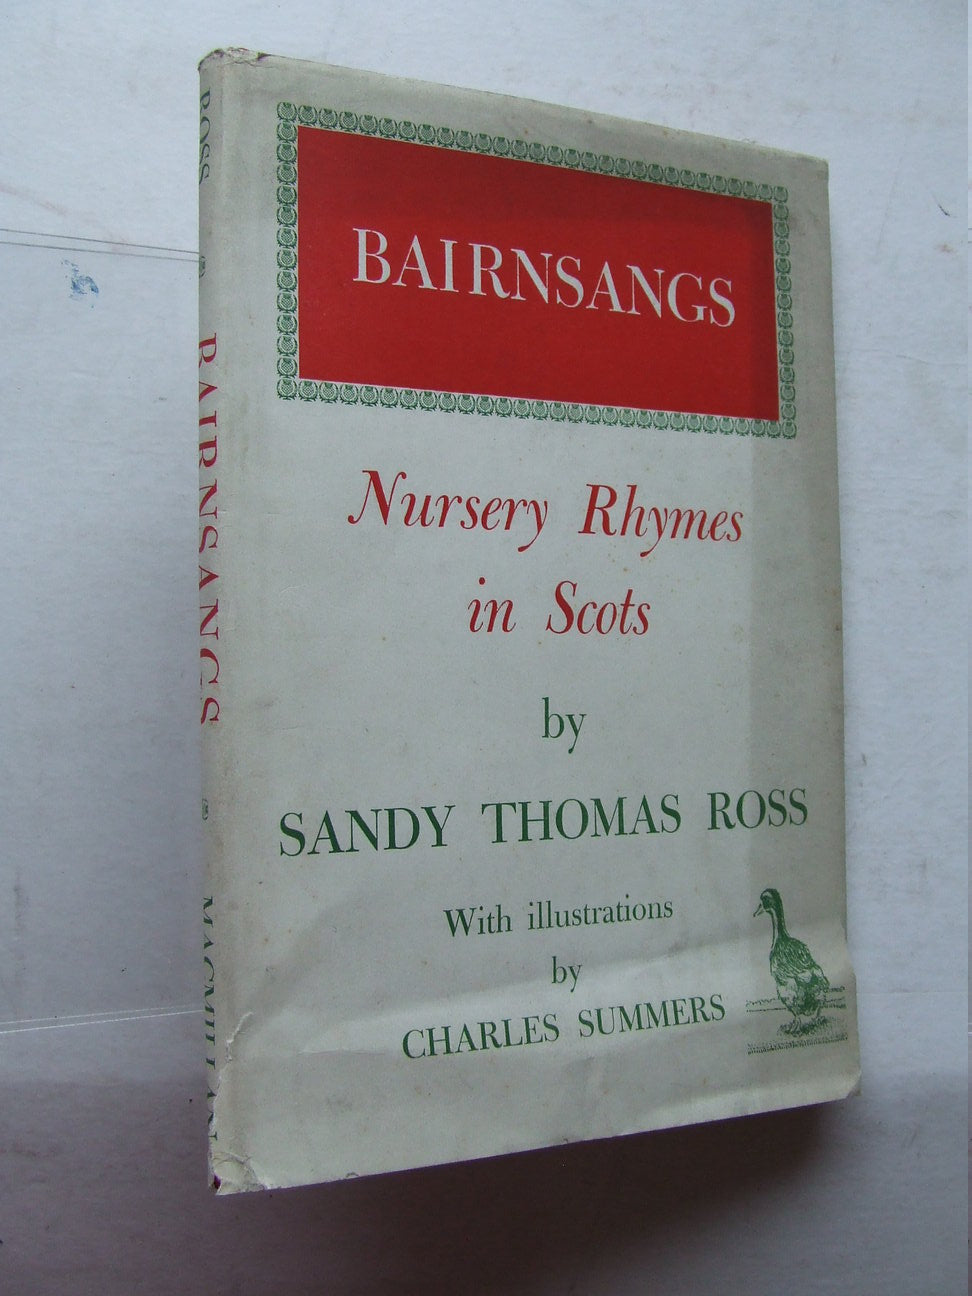 Bairnsangs, nursery rhymes in Scots